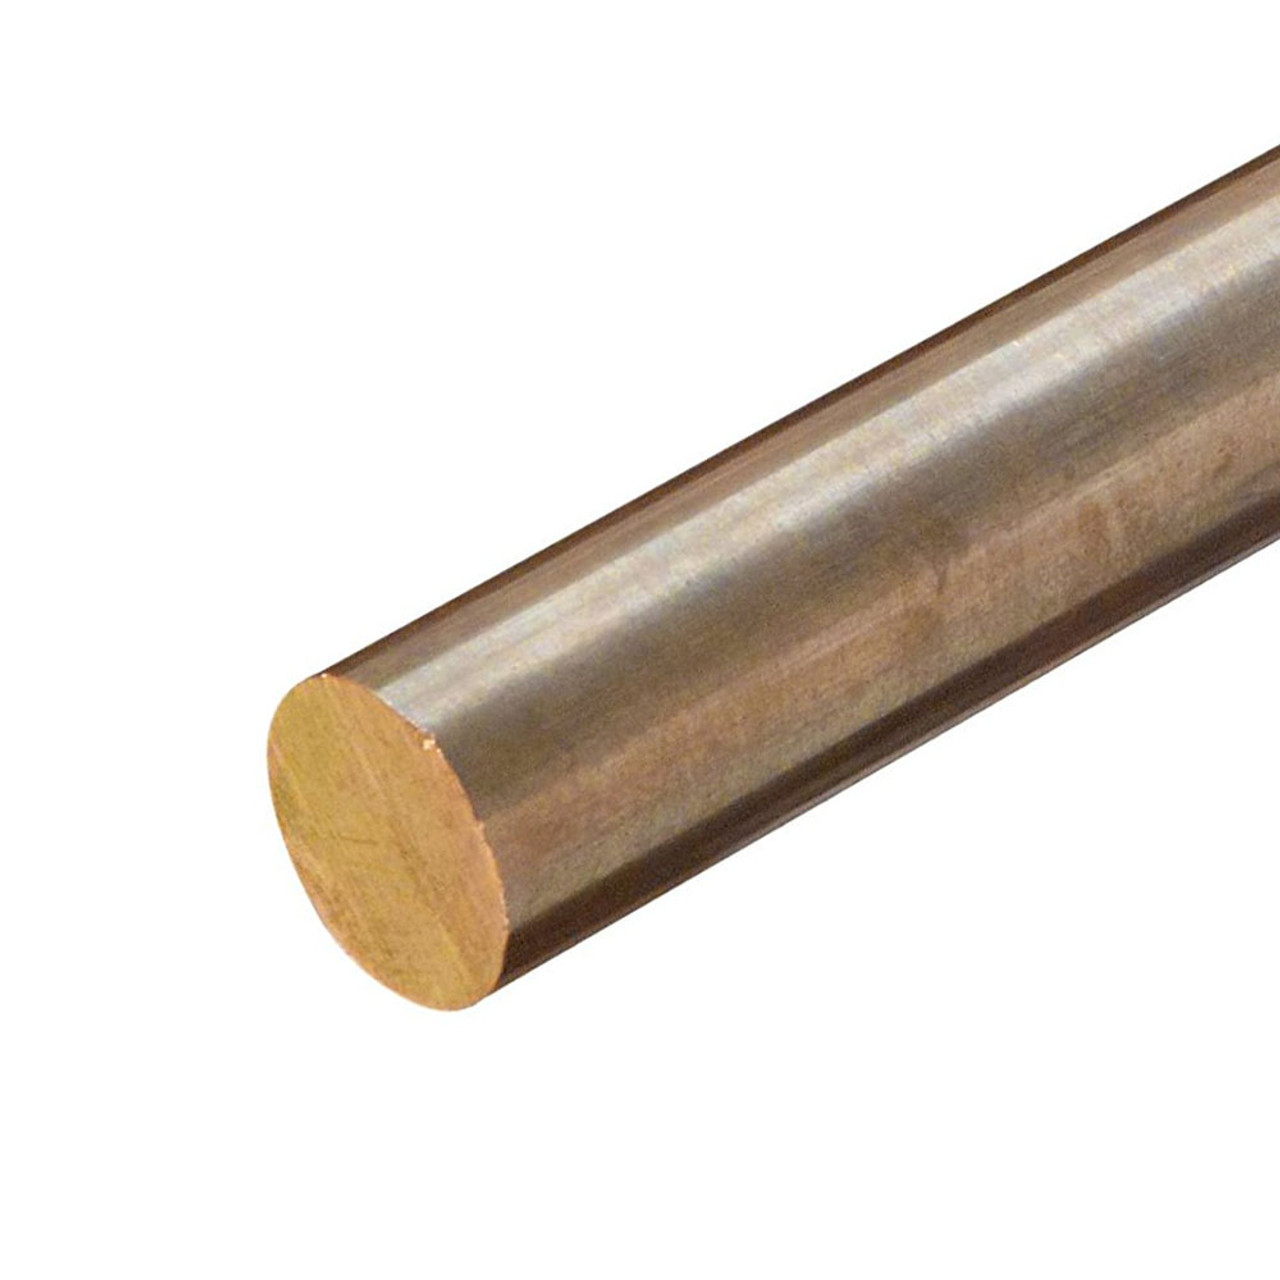 0.437 (7/16 inch) x 36 inches, C544-H04 Phosphor Bronze Round Rod